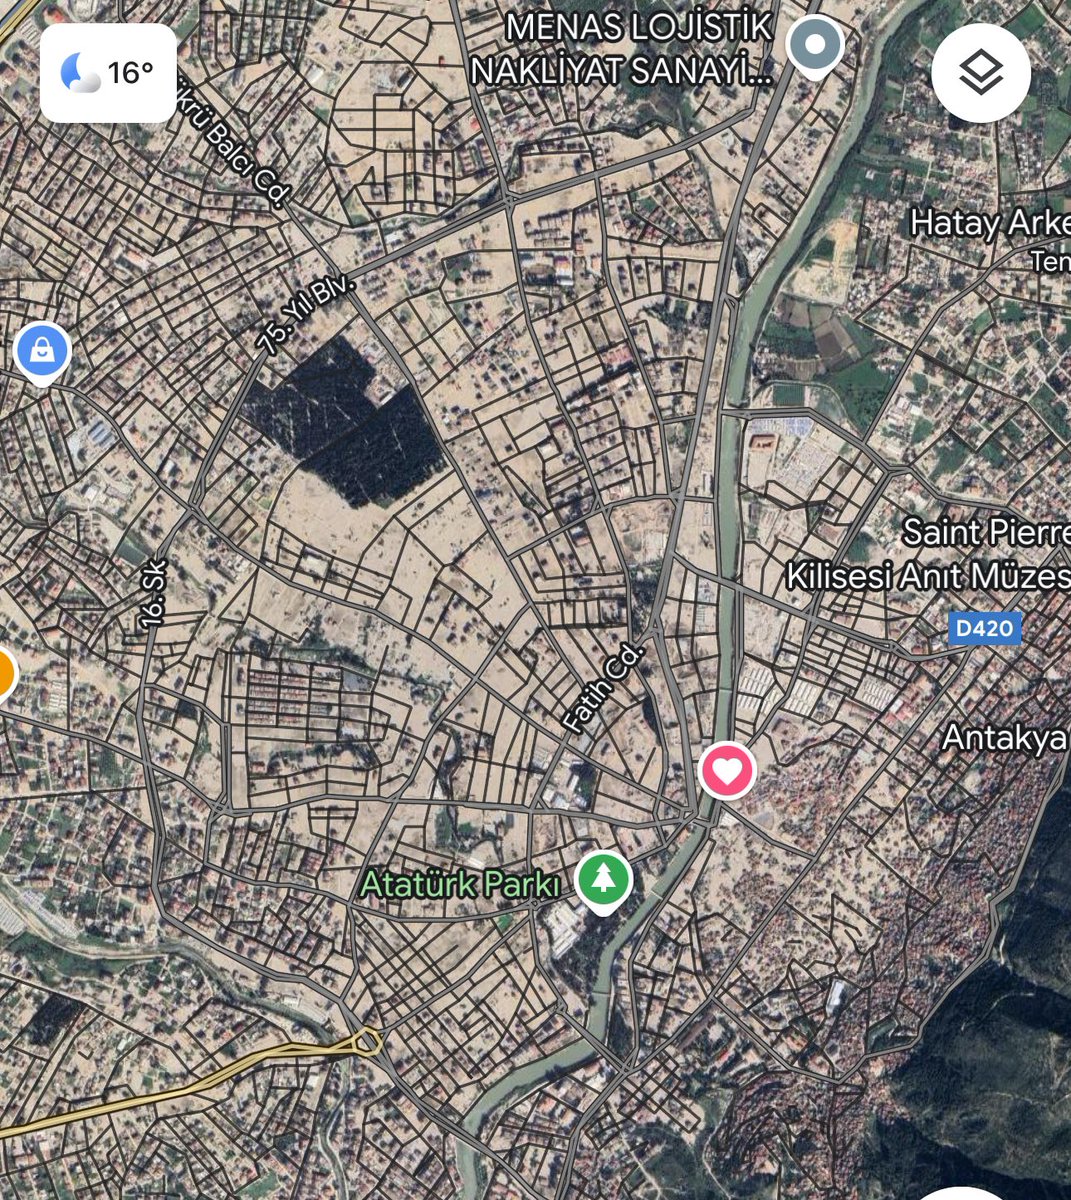 Antakya 1- Henüz güncellenmemiş Apple Maps uydu görüntüsü 2- Güncellenmiş Google Maps uydu görüntüsü ve Antakya’dan kalan tek şey TOPRAK